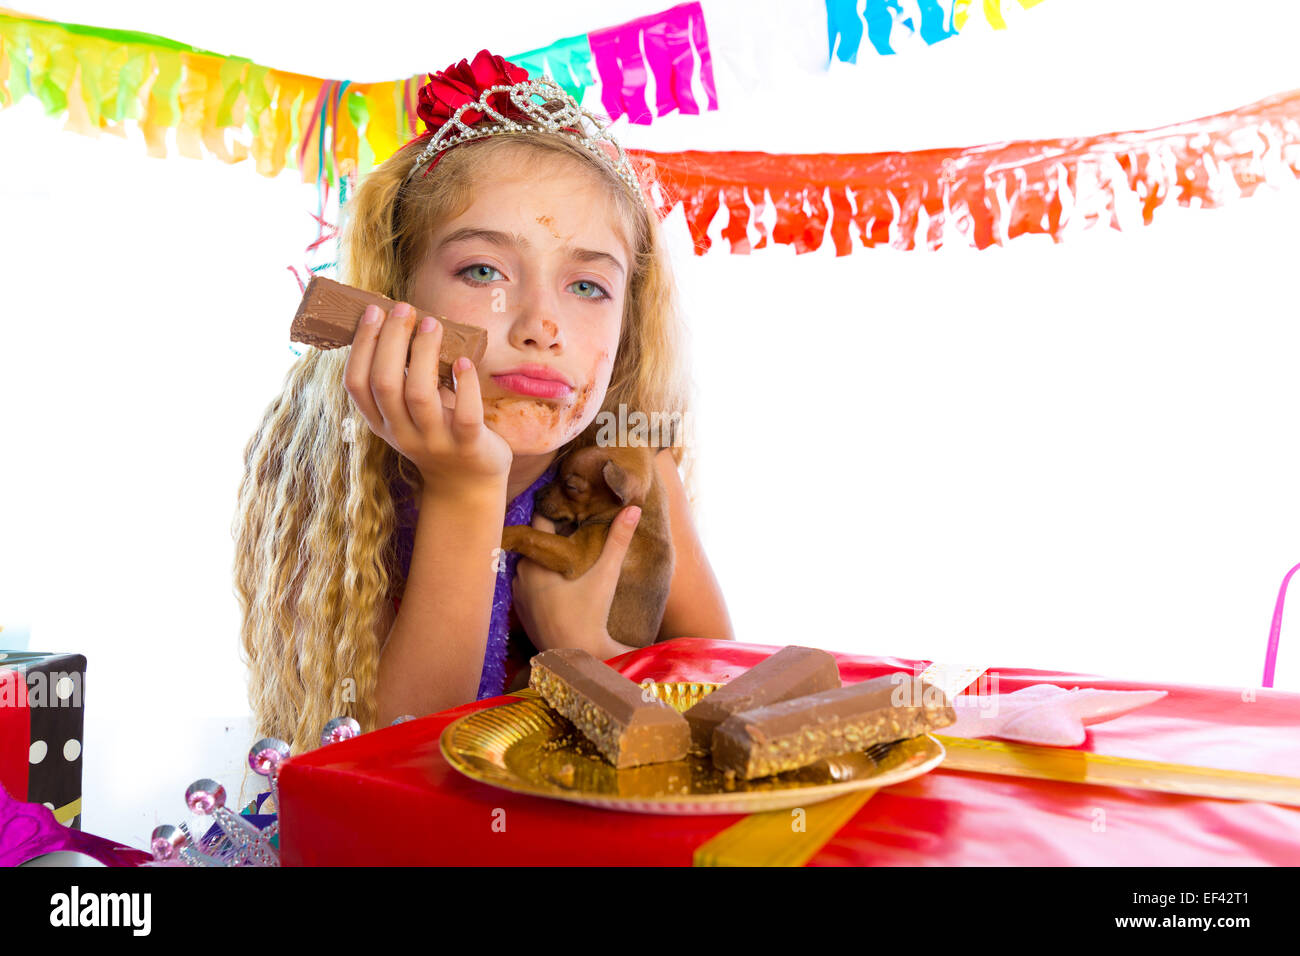 Geste ennuyé kid girl blonde en partie avec des chocolats et chiot chihuahua dog Banque D'Images